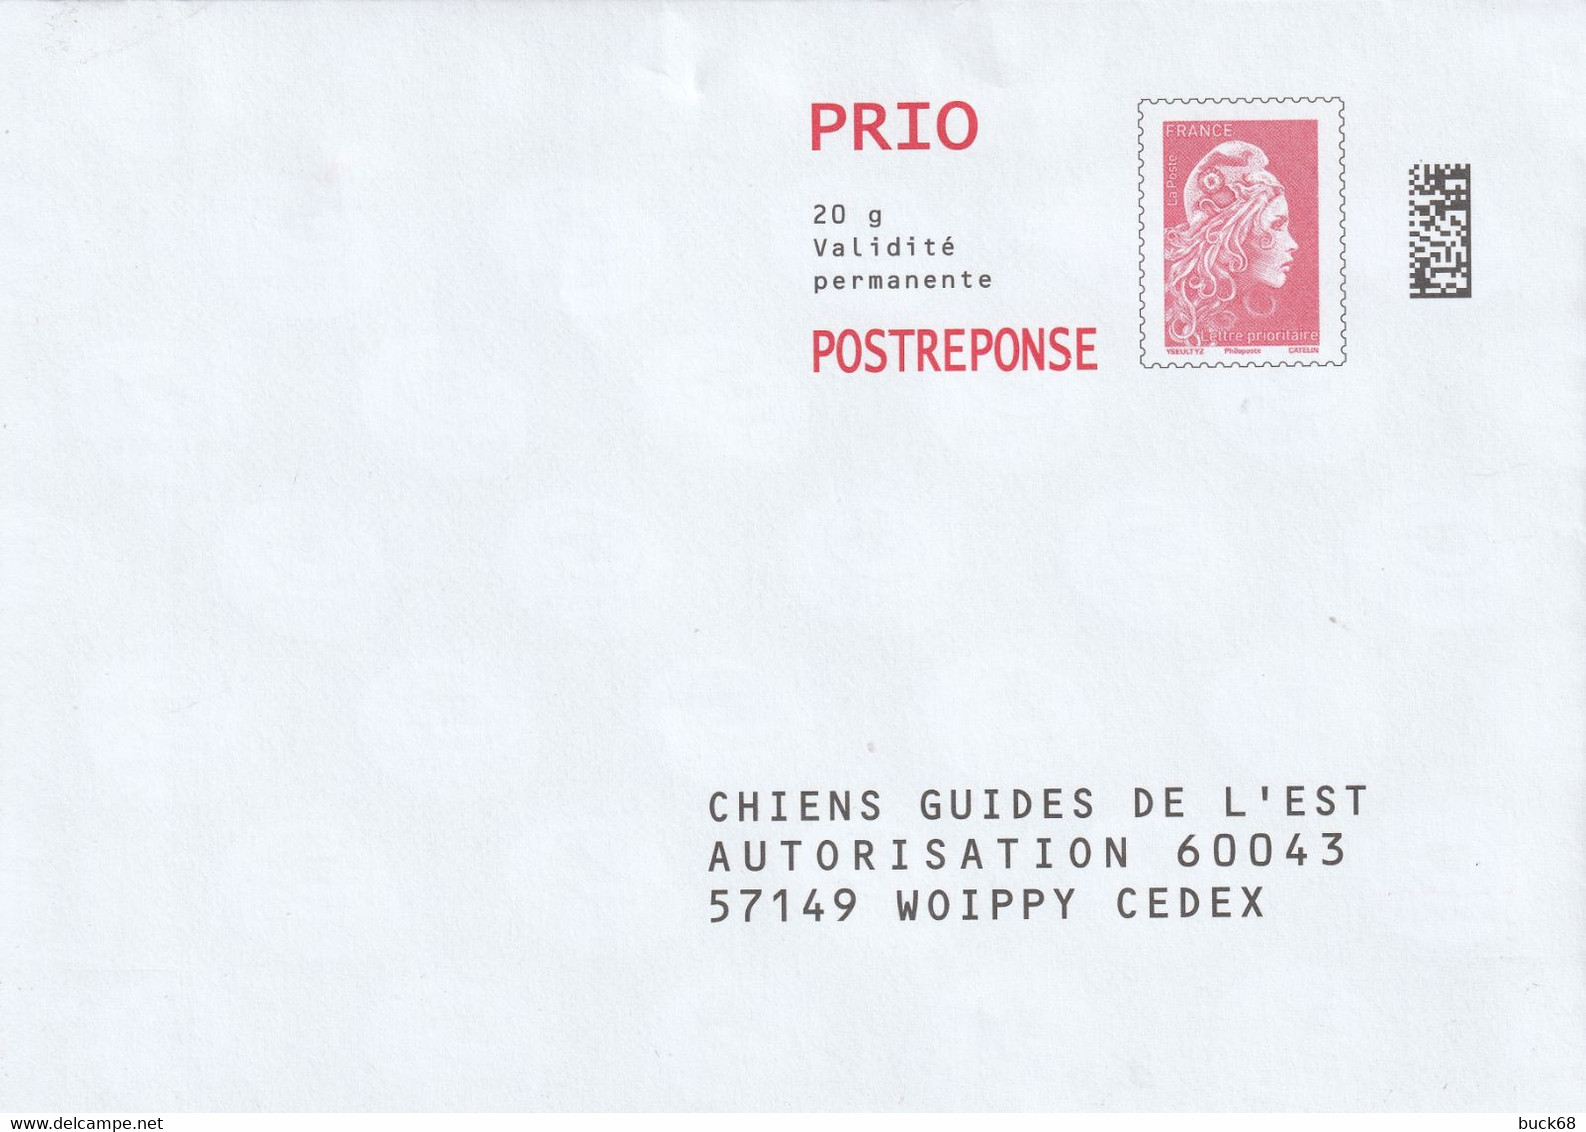 FRANCE Enveloppe Entier Postal Marianne D'YZ (street Artist) Prio 20 G Chiens Guides De L'Est - Cartes/Enveloppes Réponse T